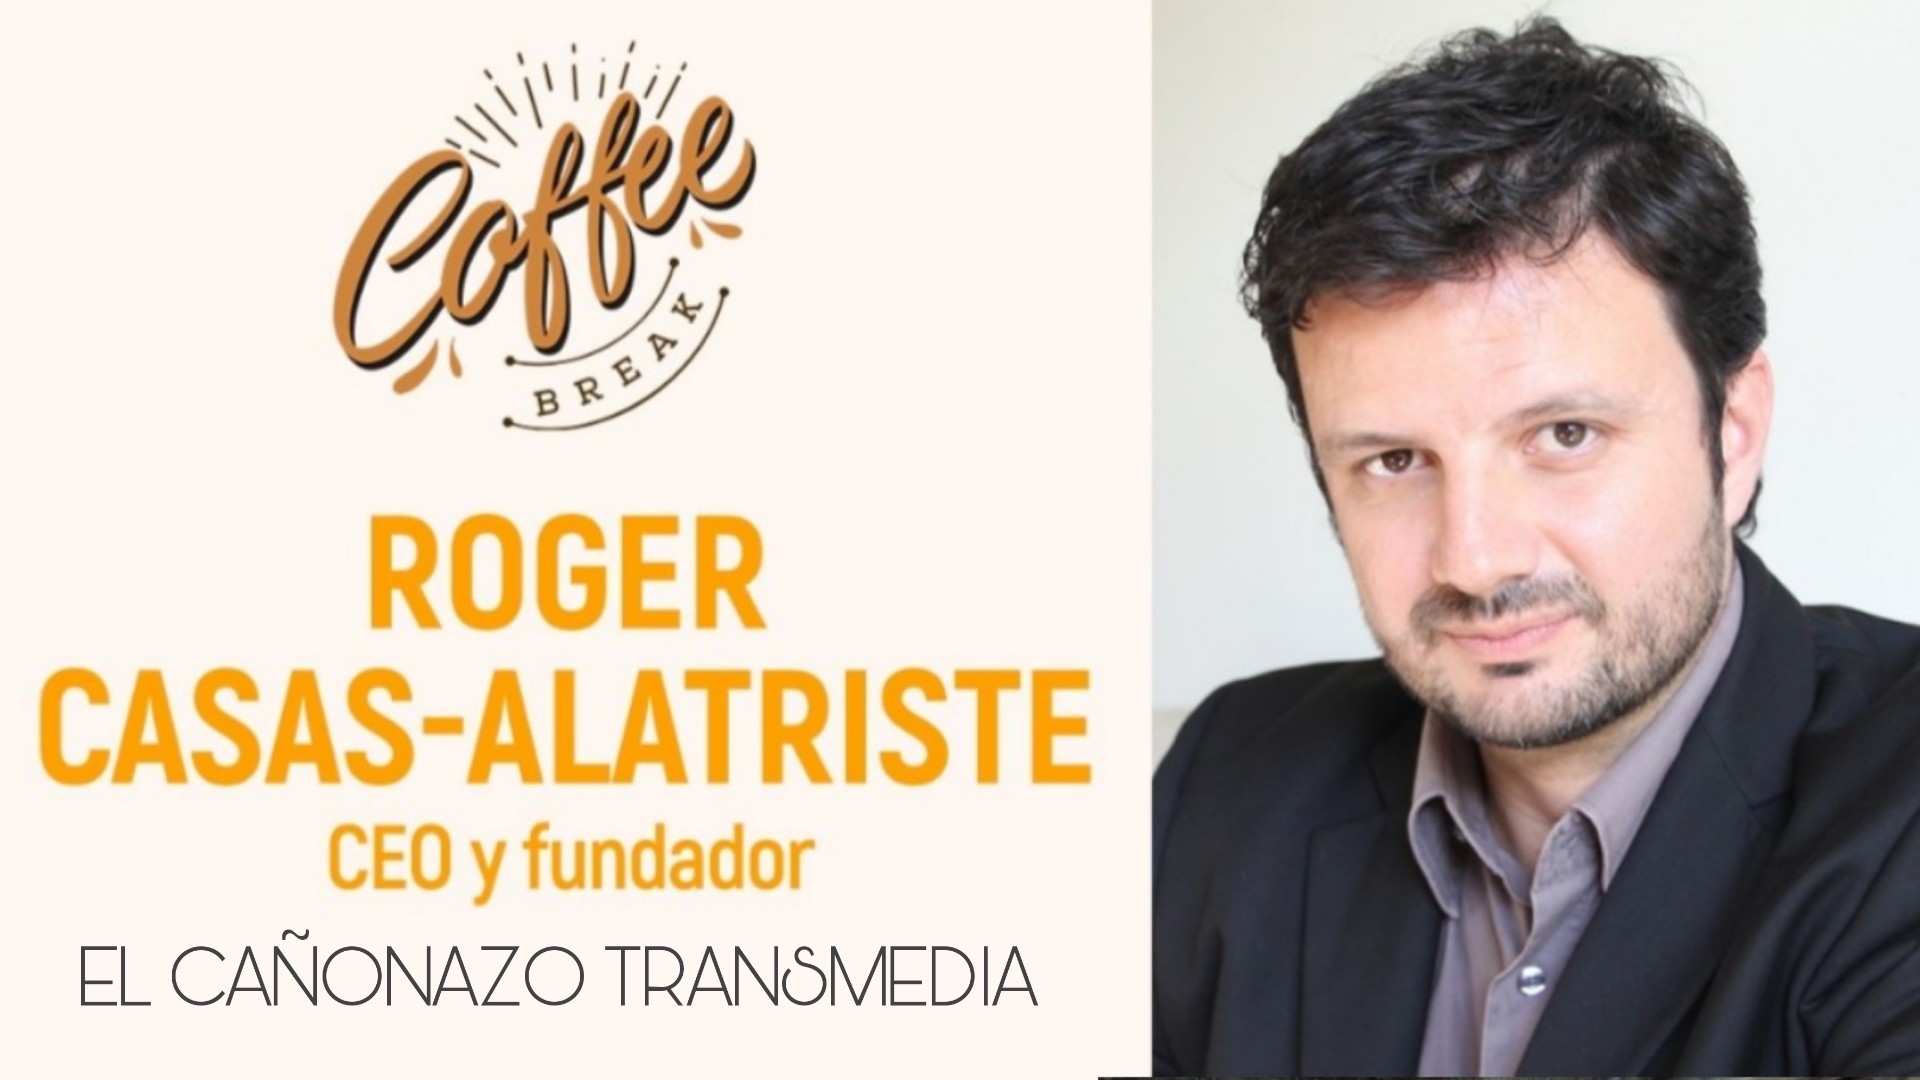 Roger Casas-Alatriste